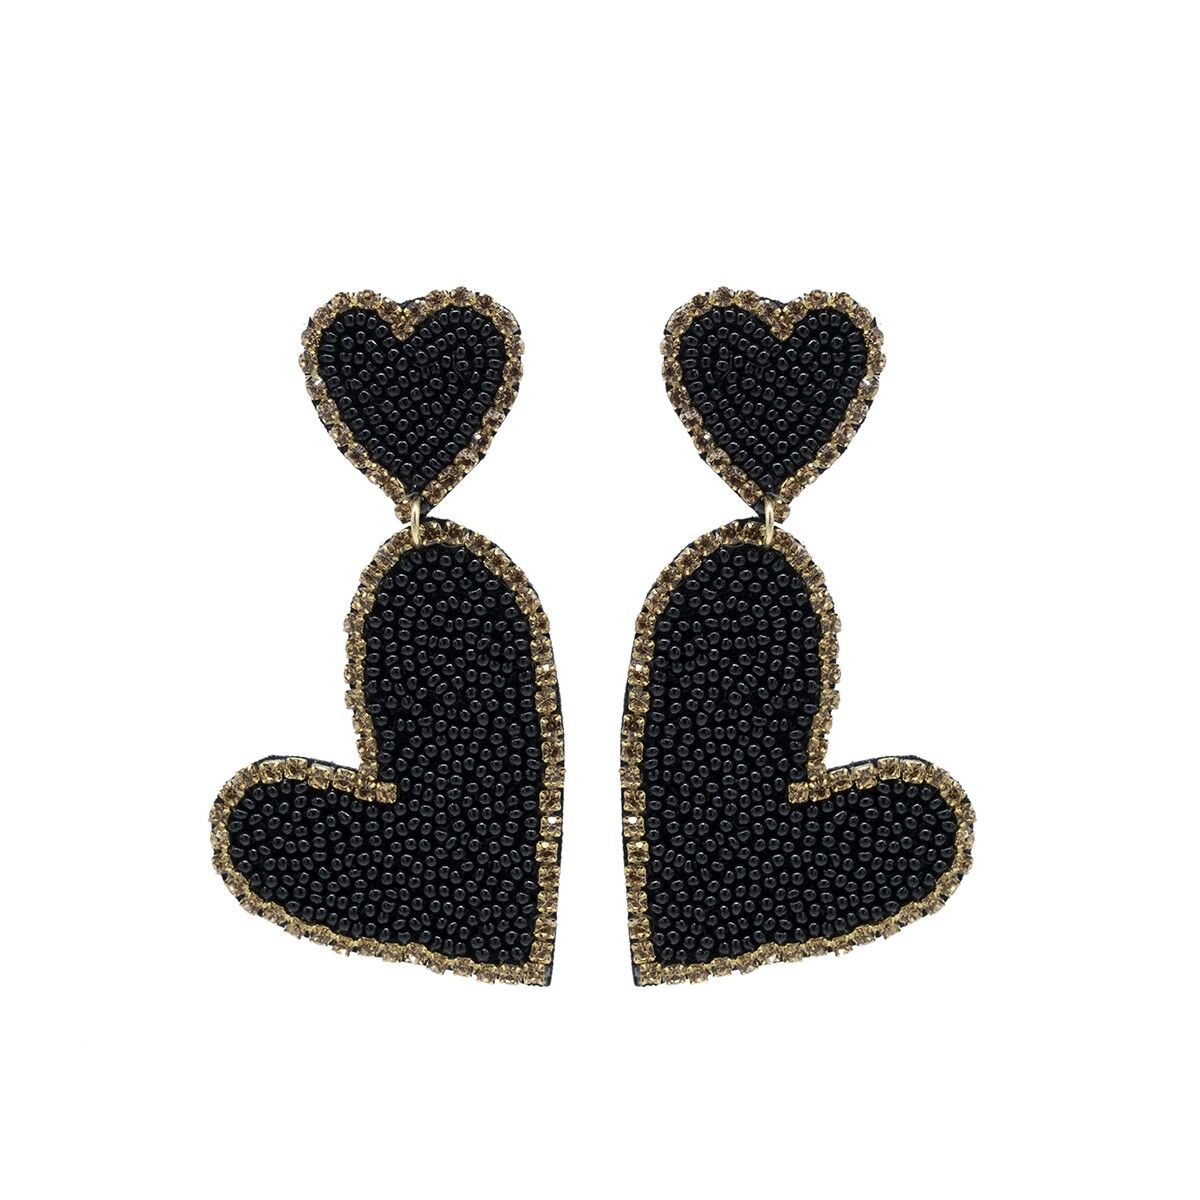 Buy wholesale Black & Gold Double Heart Drop Earrings